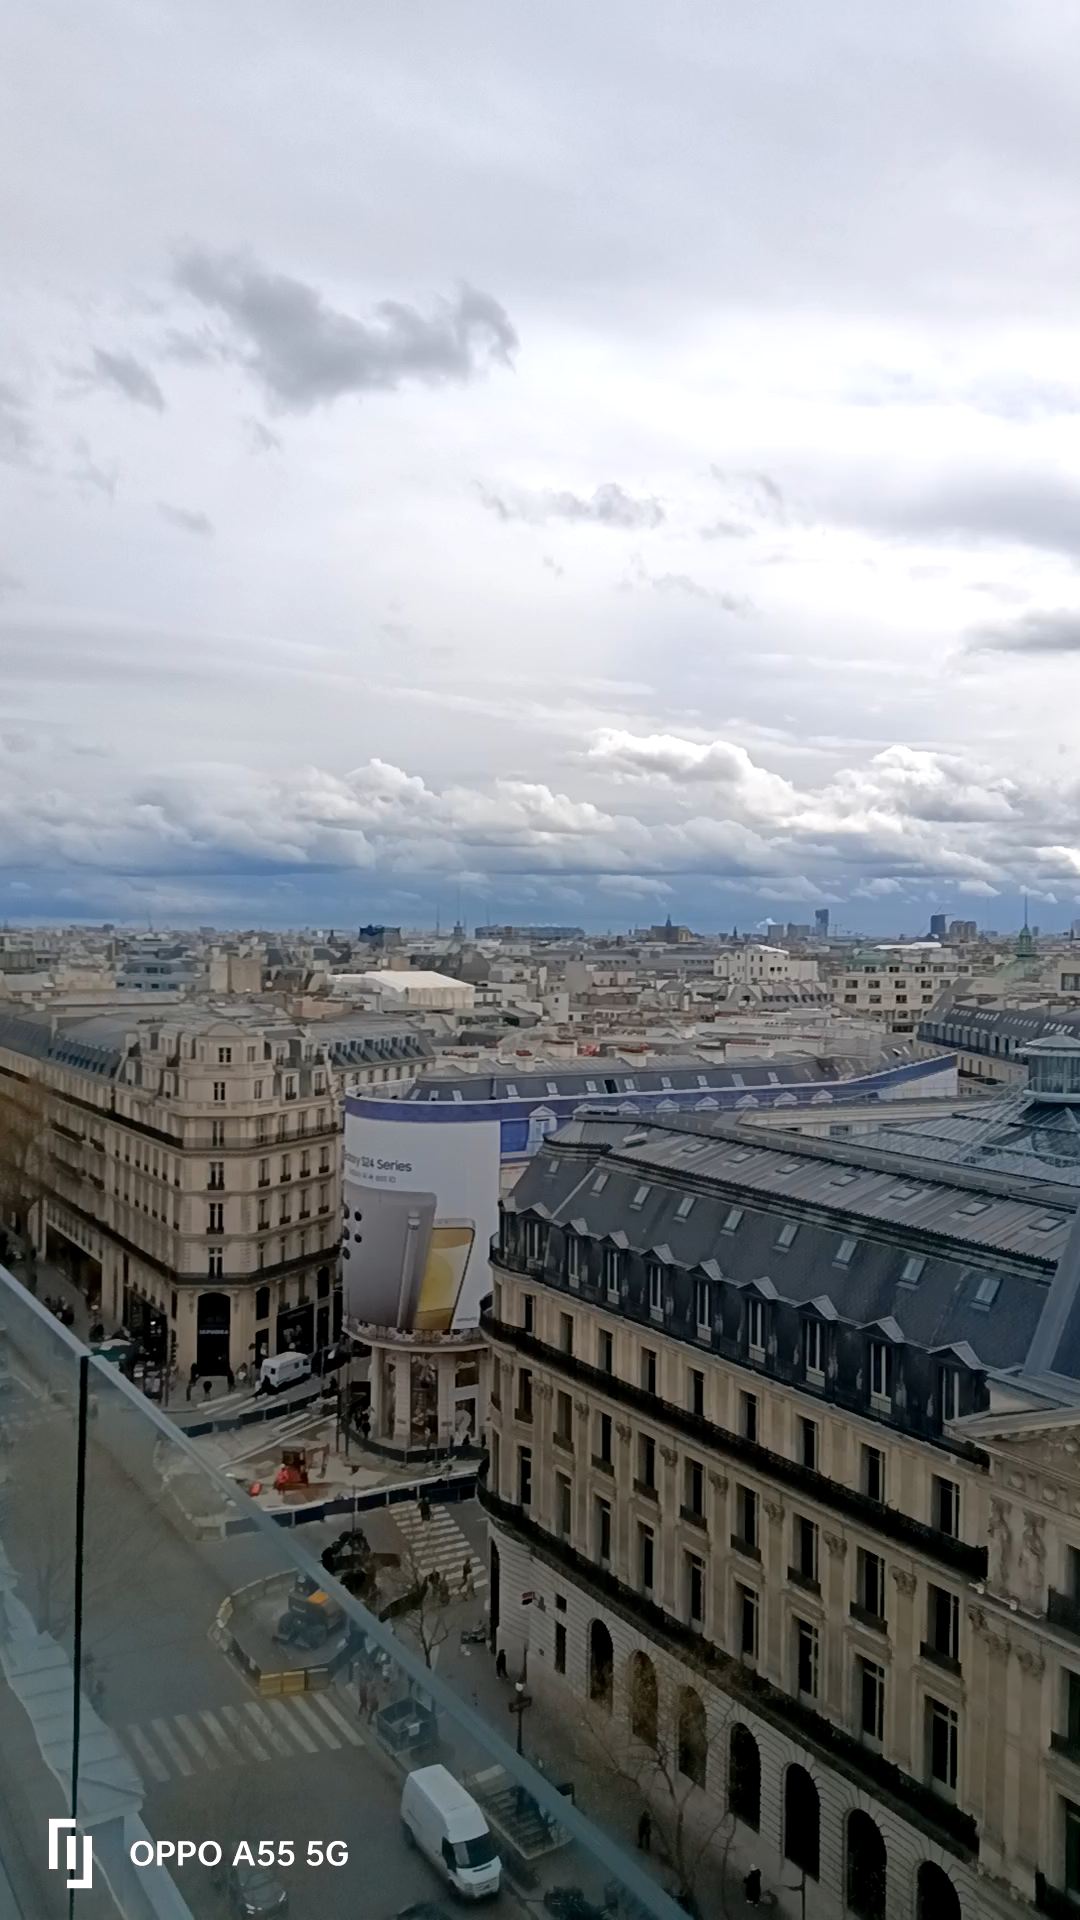 在巴黎老佛爷百货公司楼顶可俯瞰，整个巴黎的市容市貌净收眼底[Joyful]